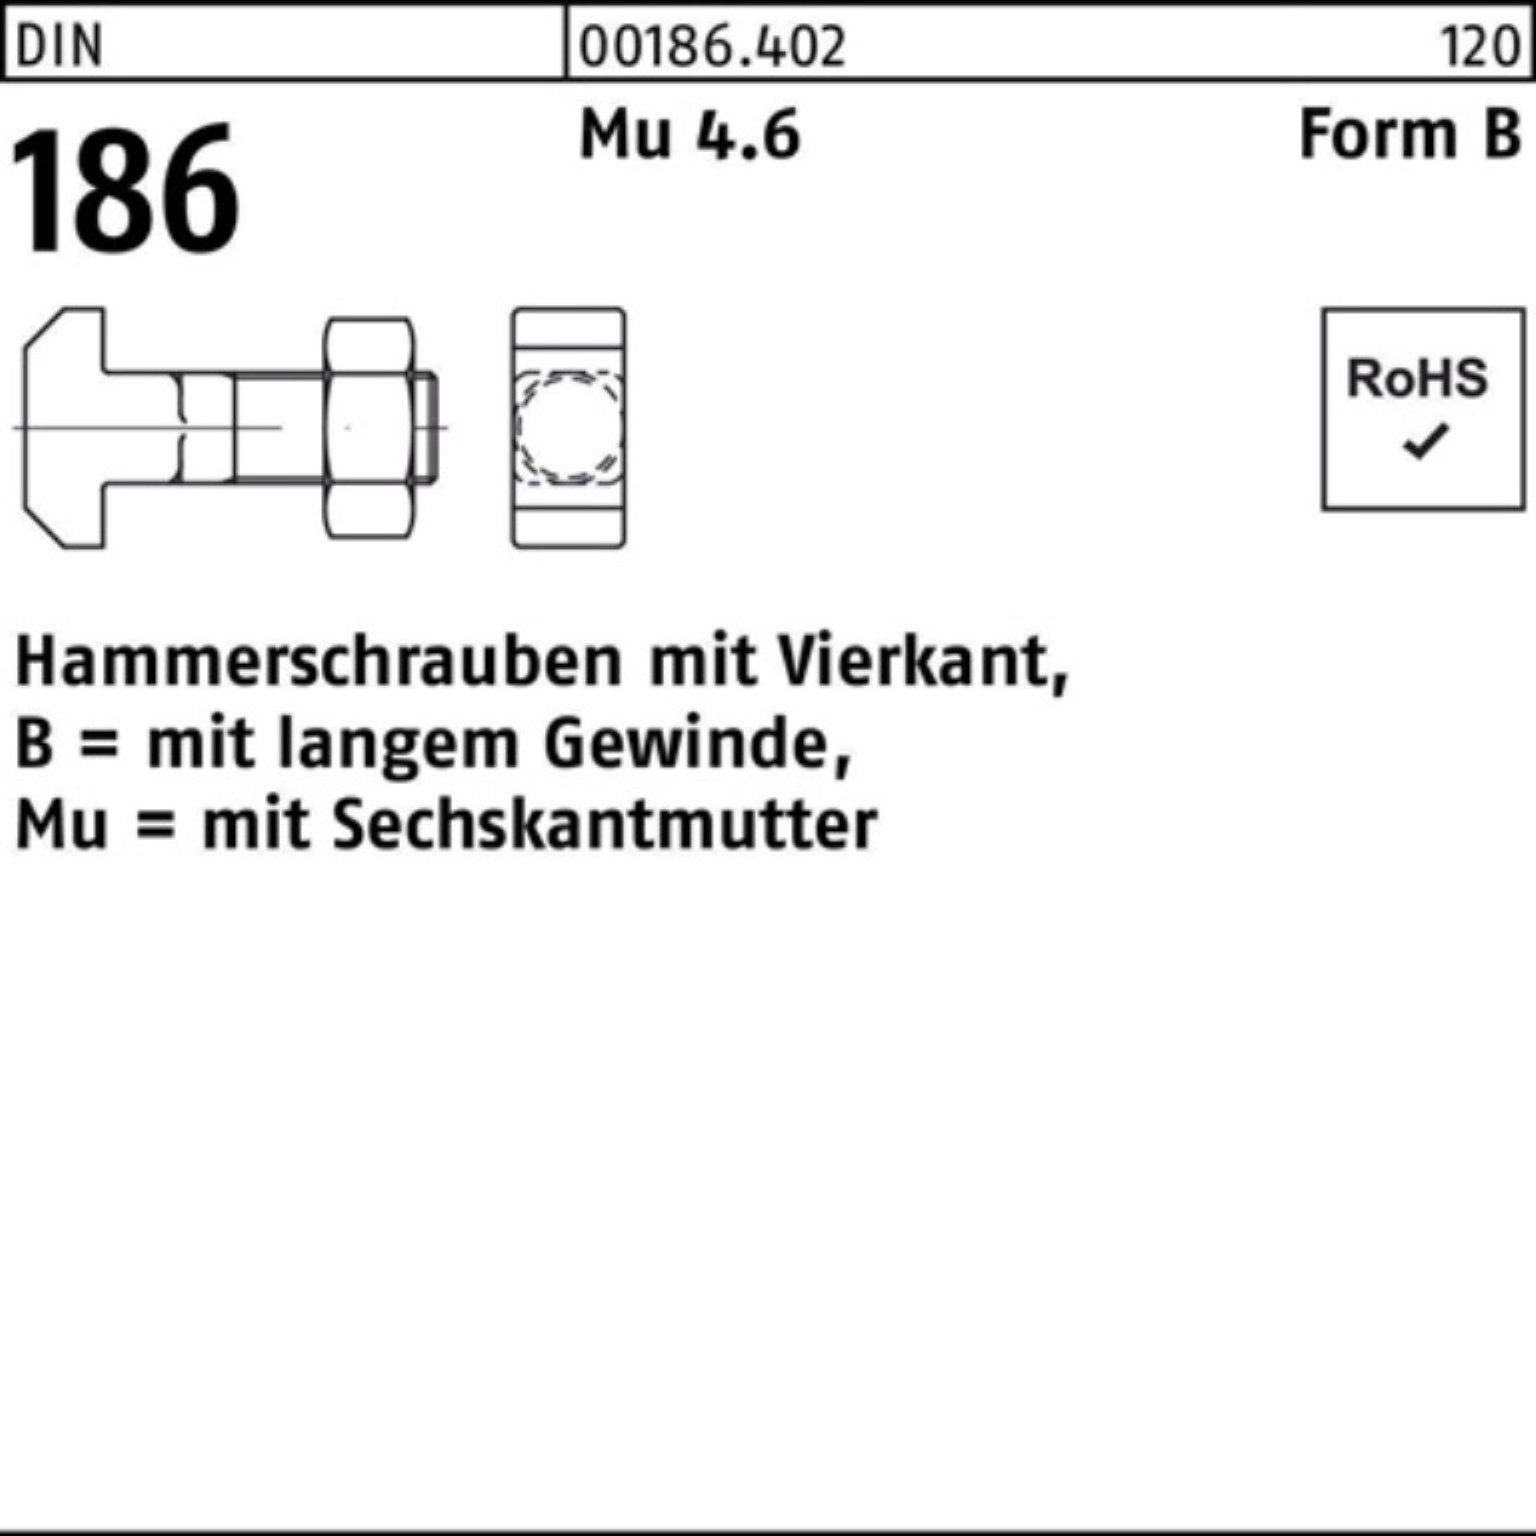 Reyher Schraube 100er Pack Hammerschraube DIN 186 FormB Vierkant 6-ktmutter BM 24x 80